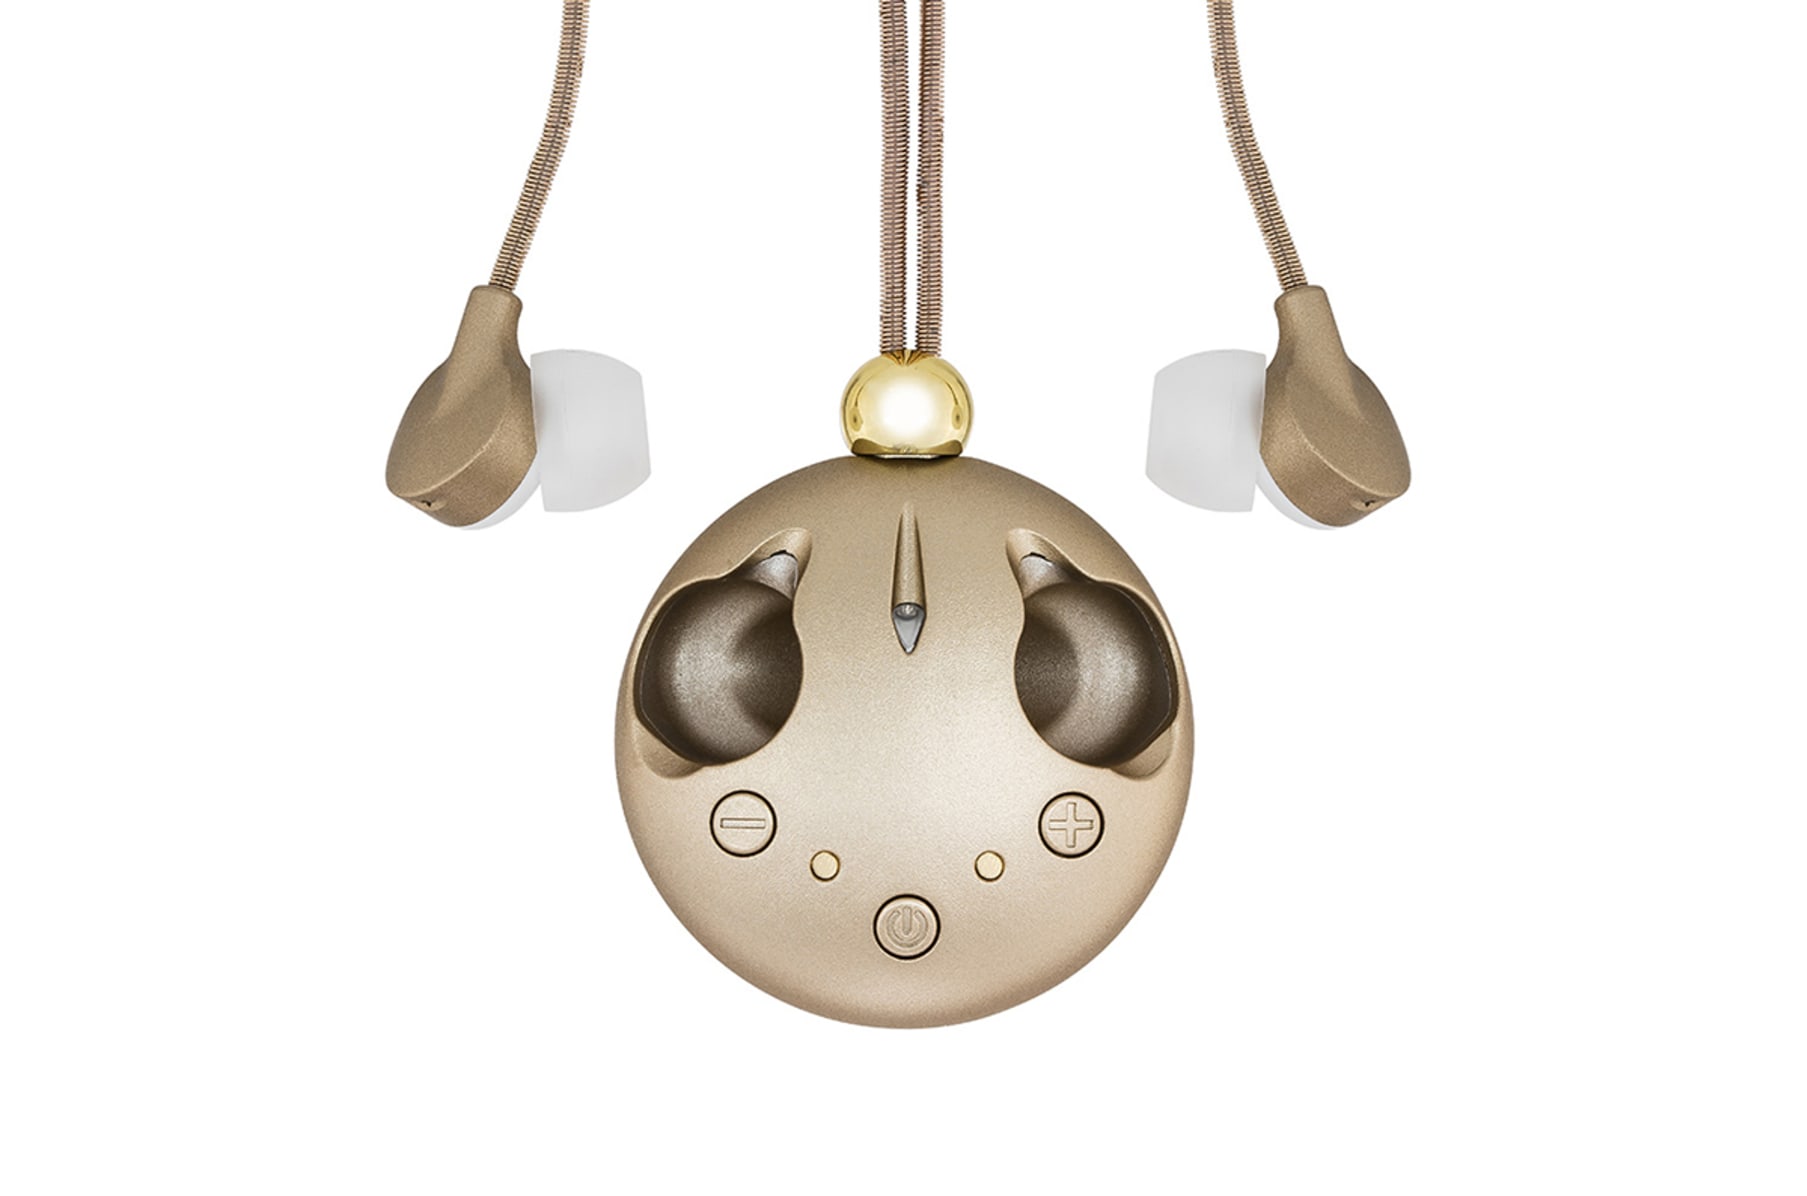 EMMESPHERE Sound Necklace - Listen in Style | Indiegogo